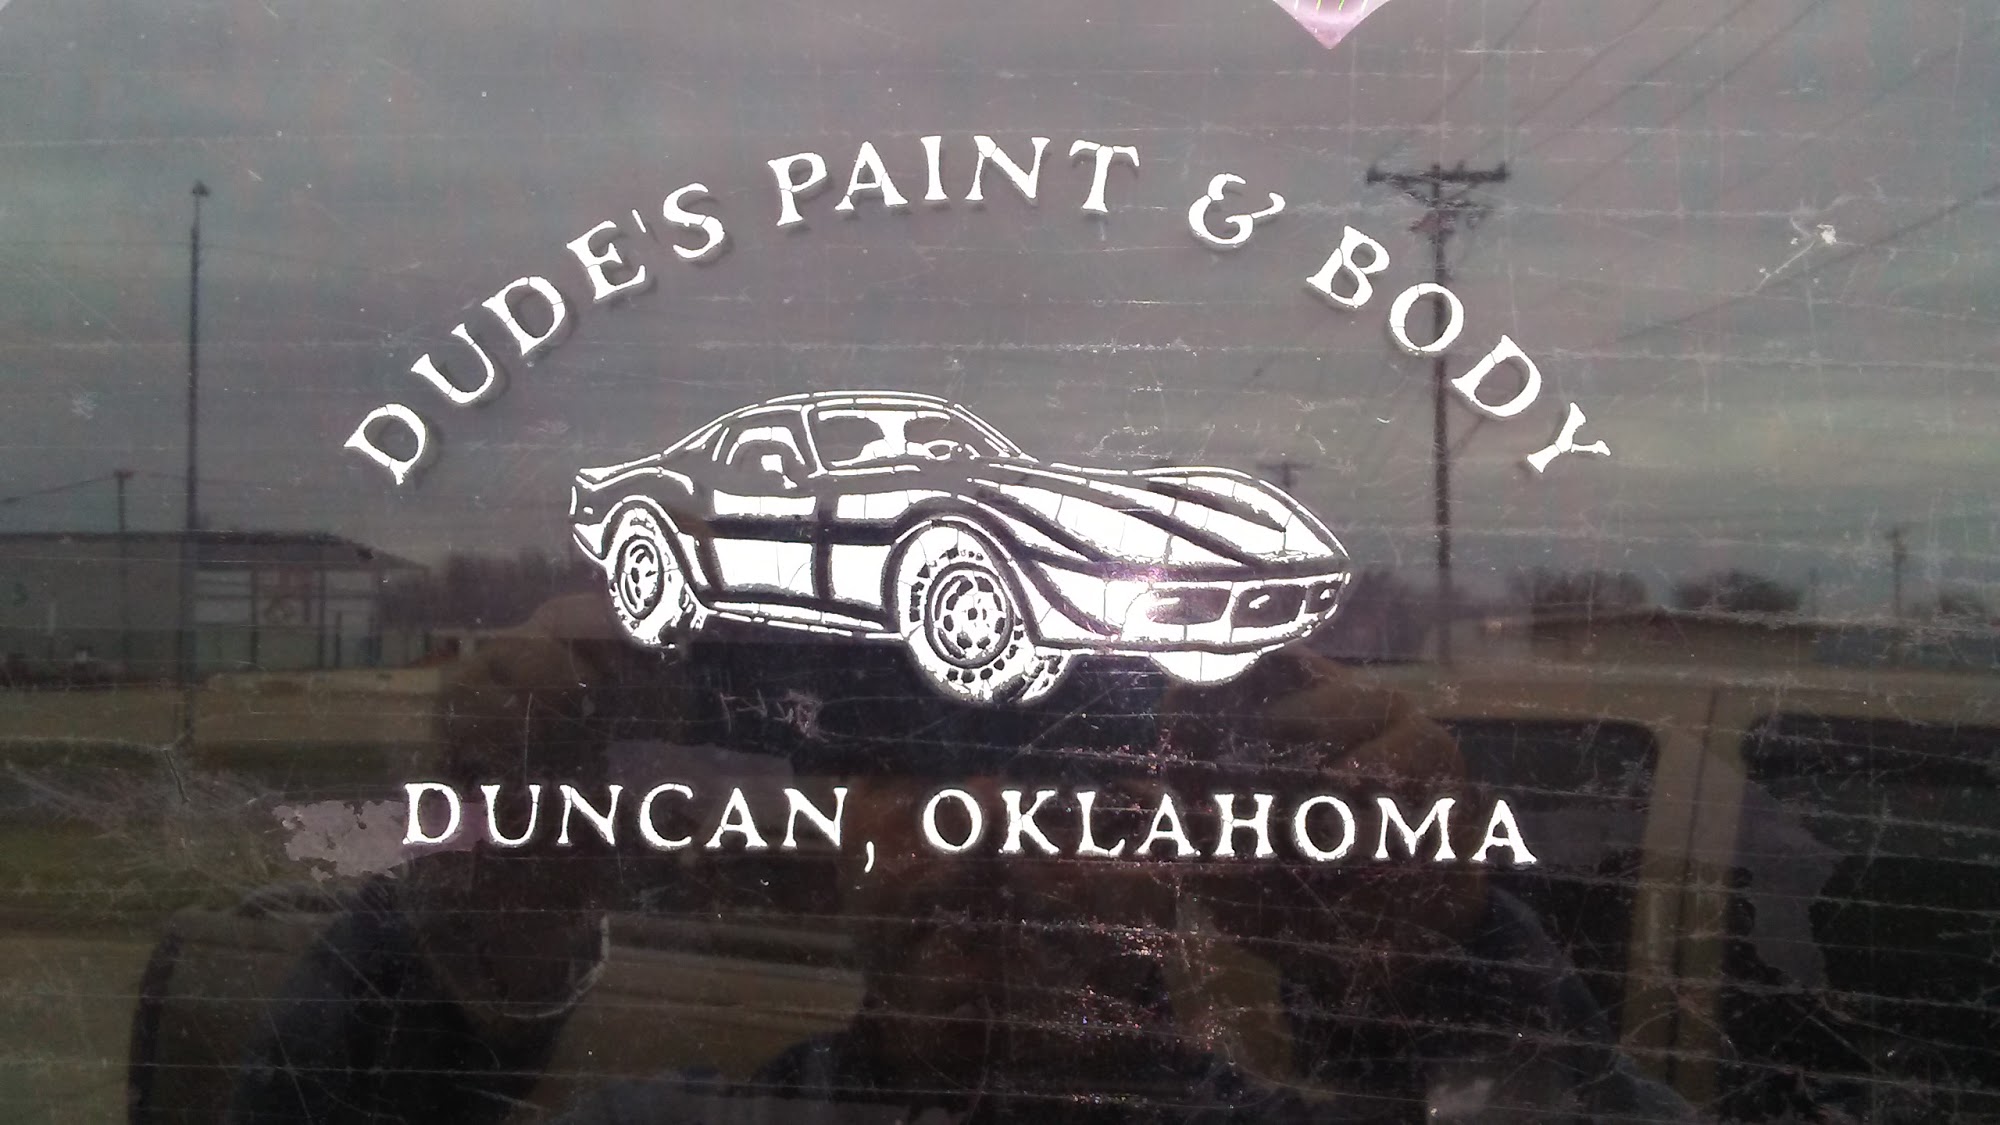 Dude's Paint & Body Shop